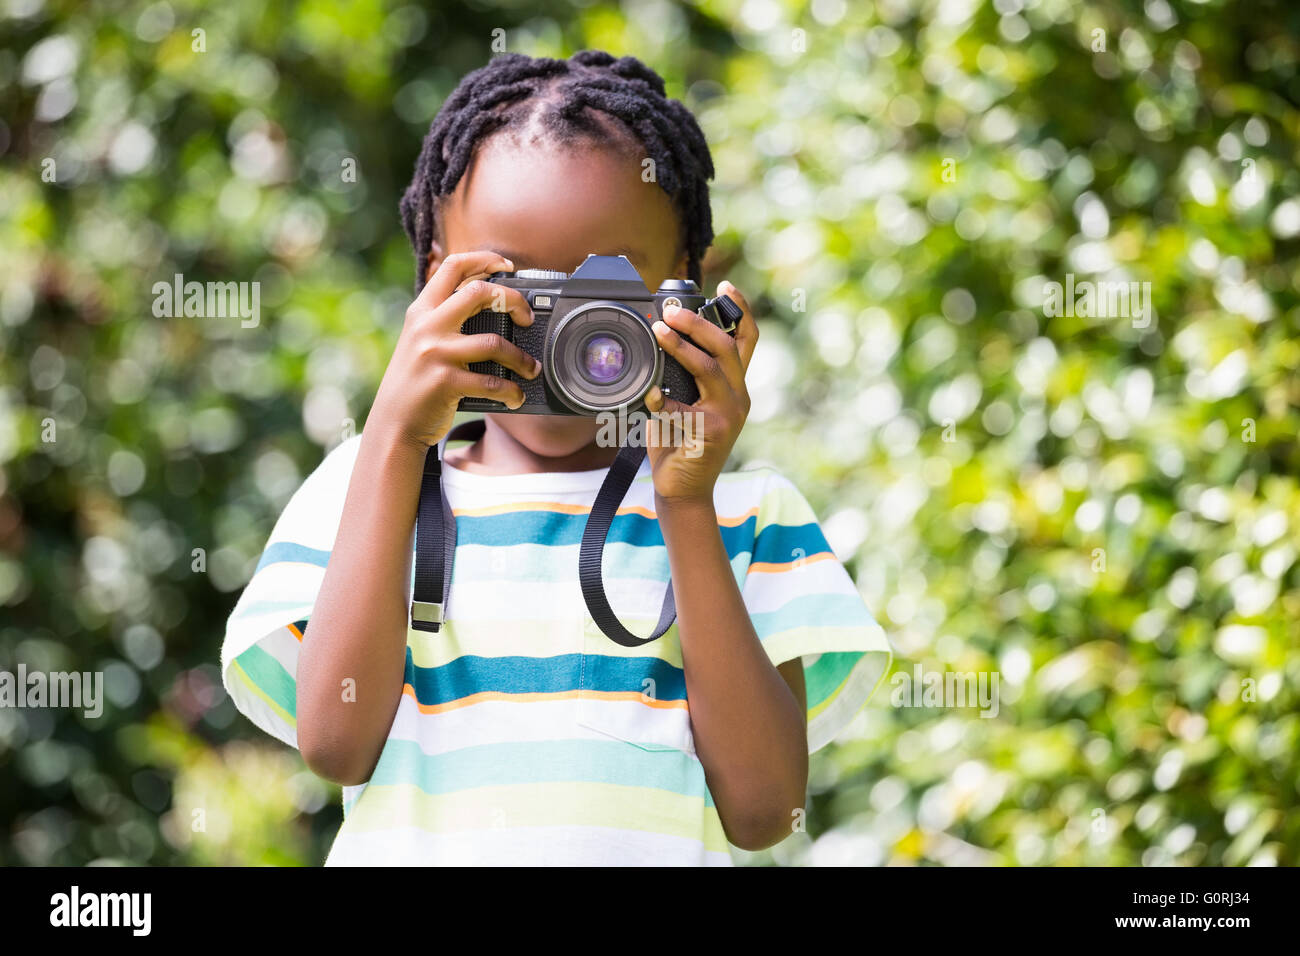 Un niño está tomando fotografías Foto de stock